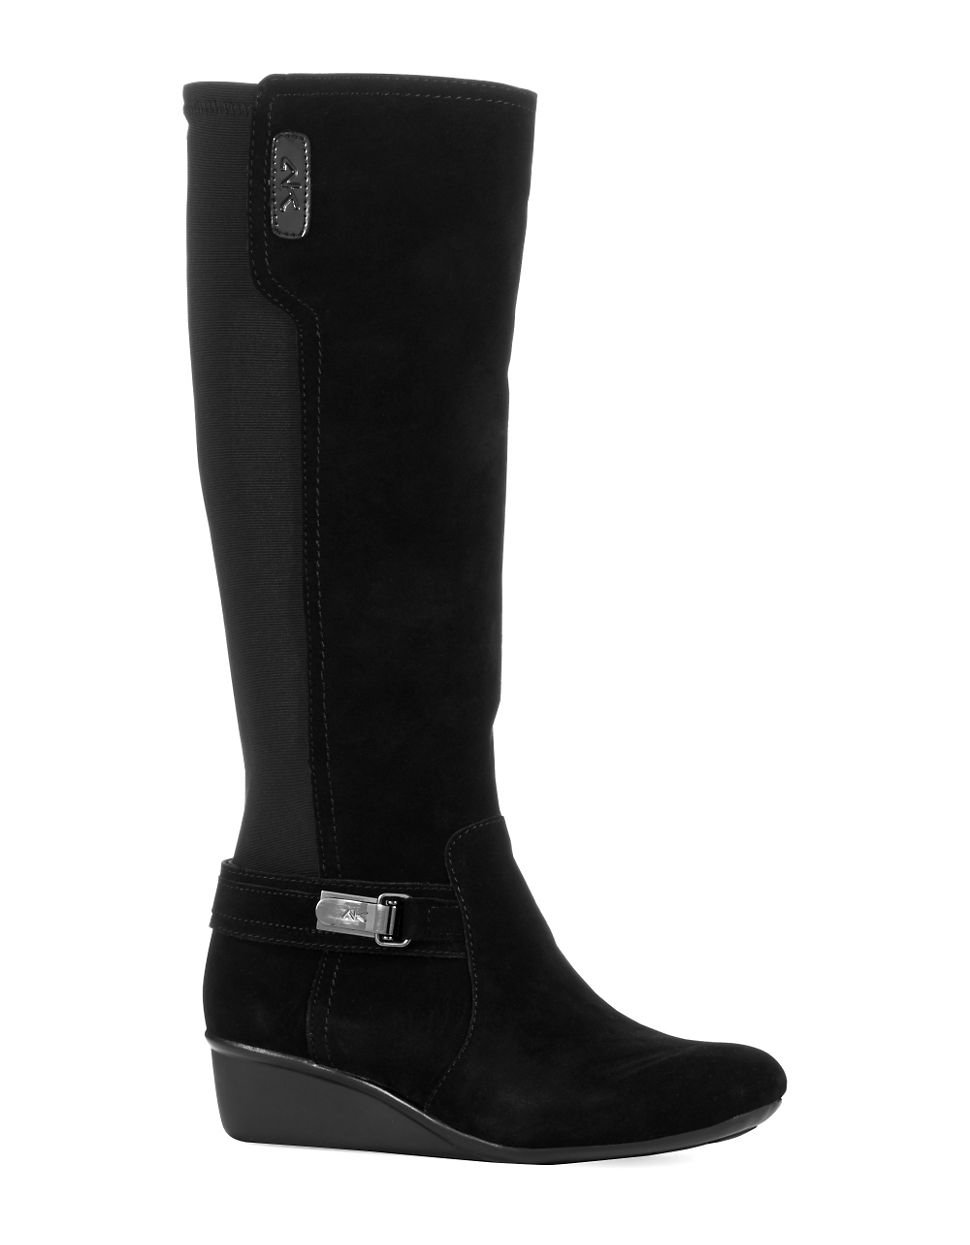 Anne klein Draft Boots in Black | Lyst